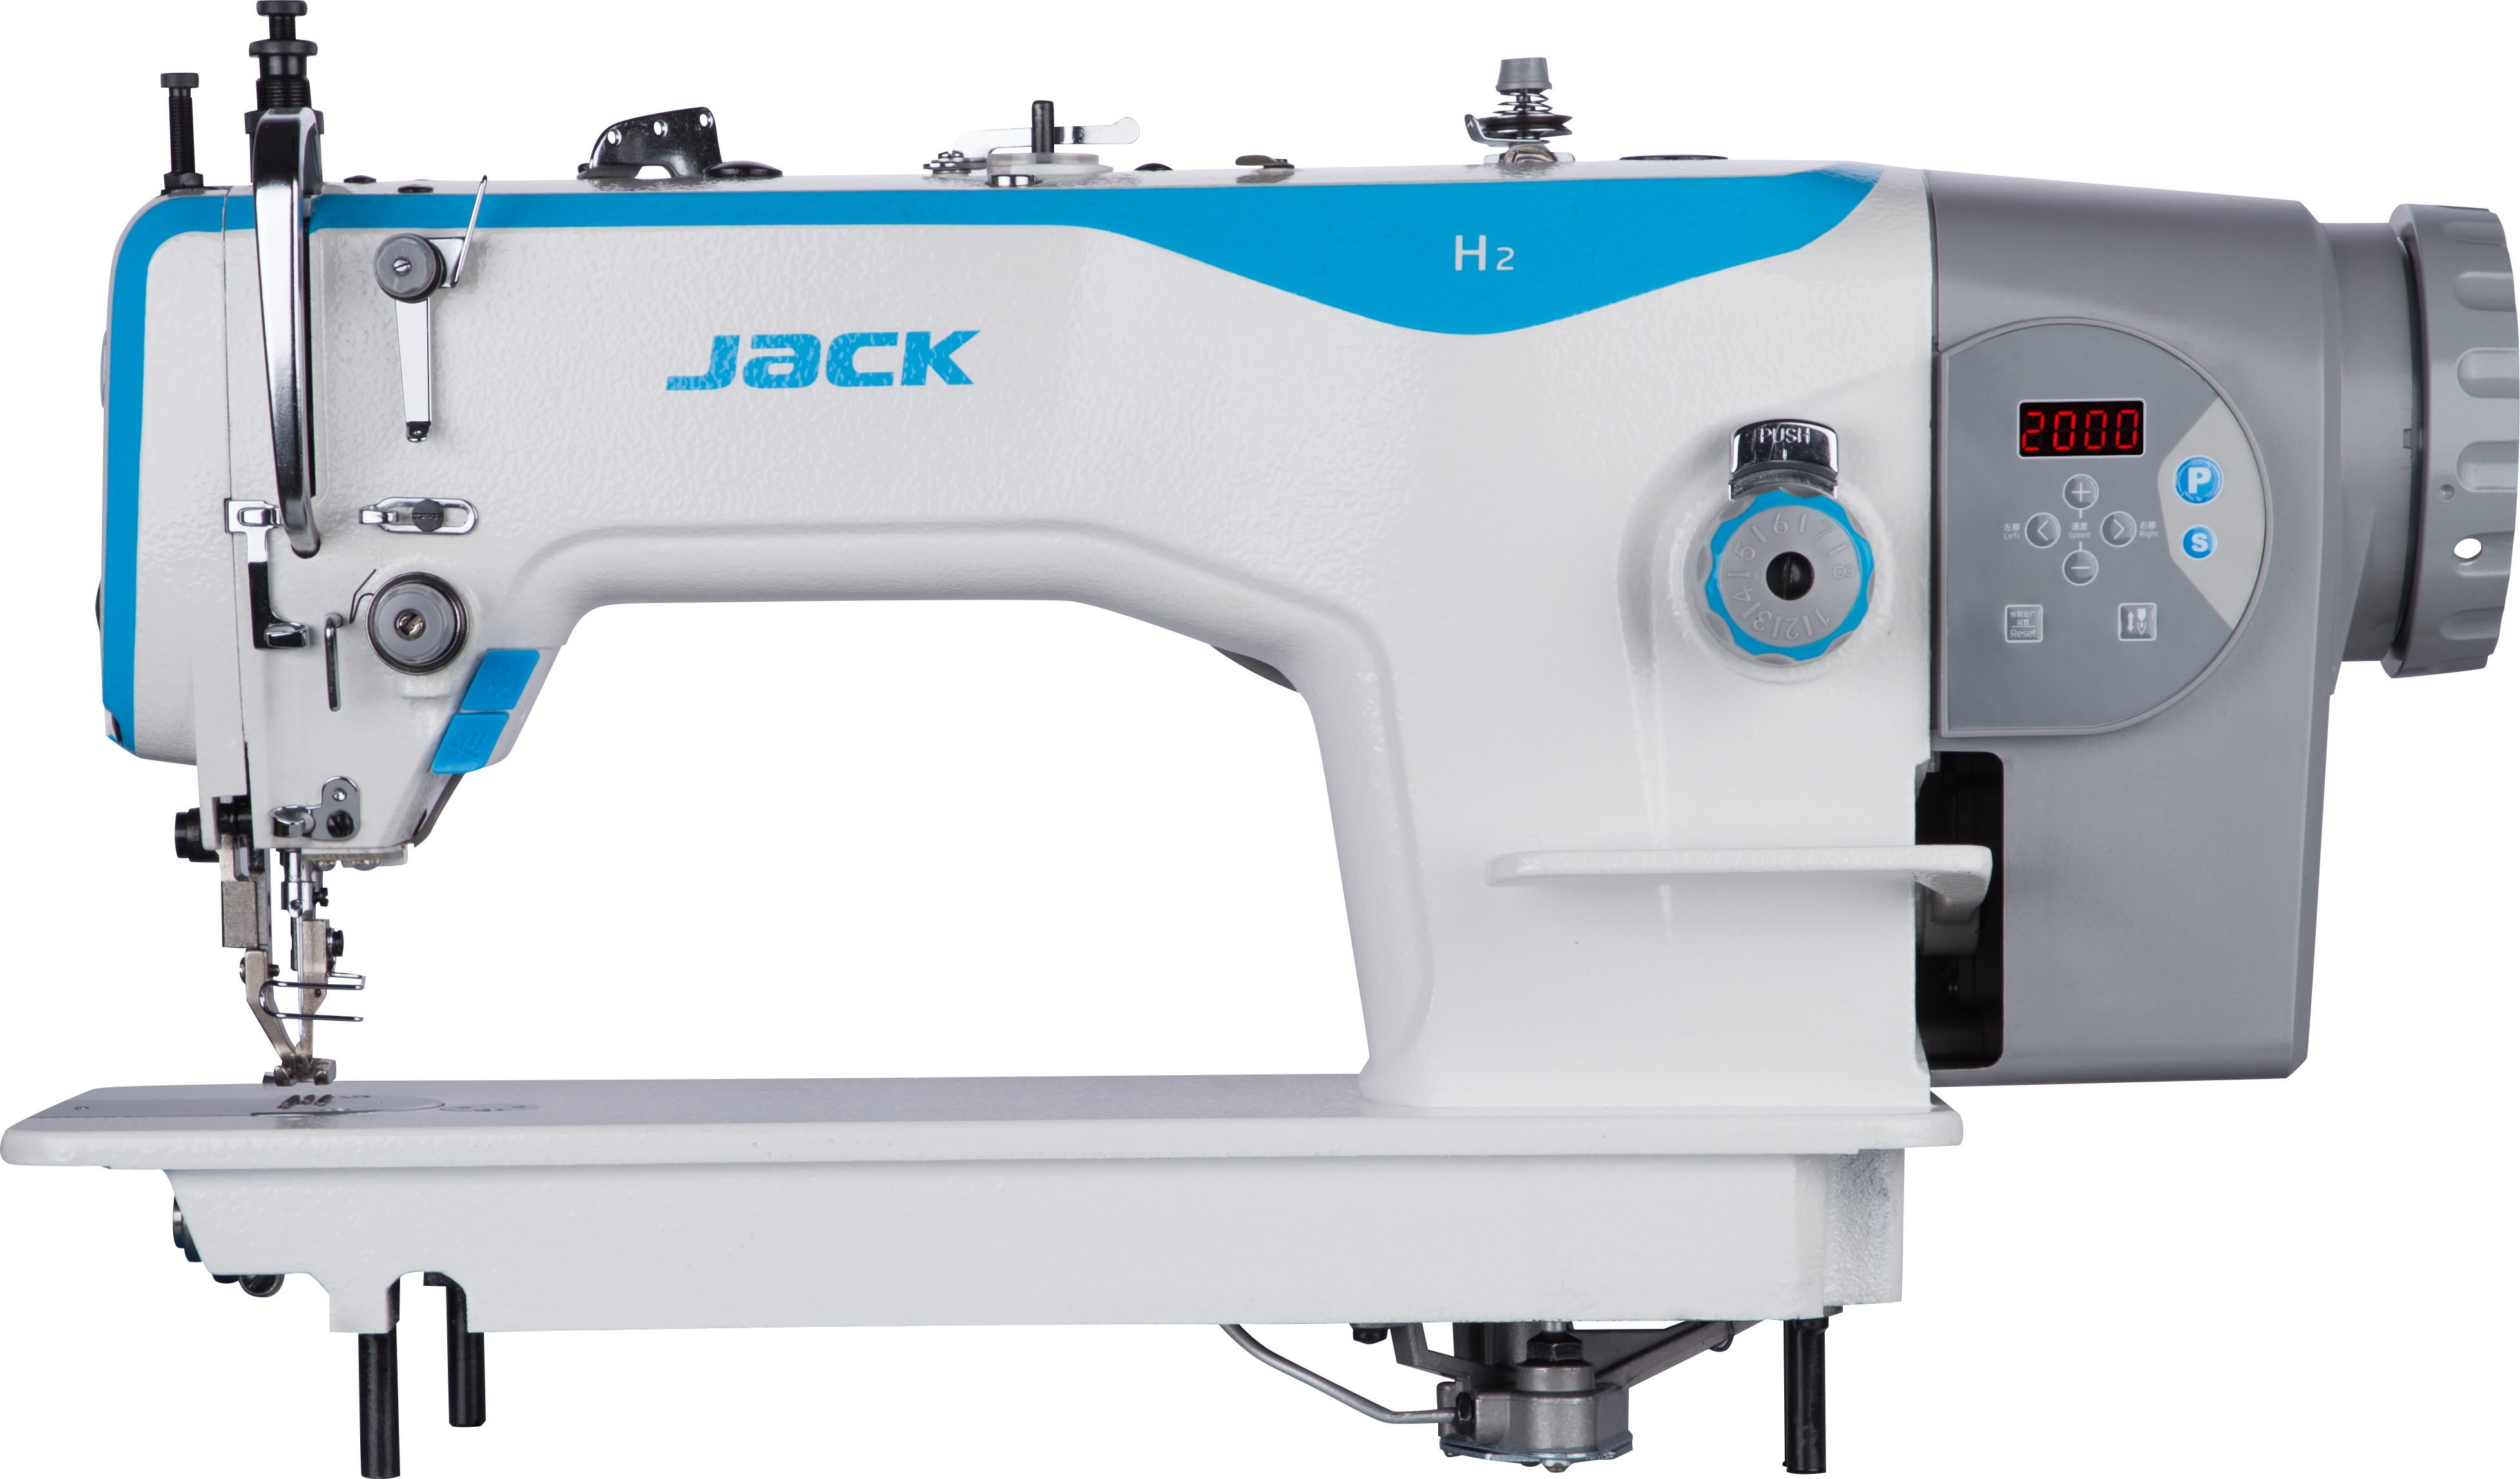 Швейная машина Jack h5 cz4. Промышленная швейная машина Jack h2-cz. Промышленная швейная машина Jack h2-cz-12. Jack JK-h2-cz-12. Промышленная прямострочная швейная машина купить